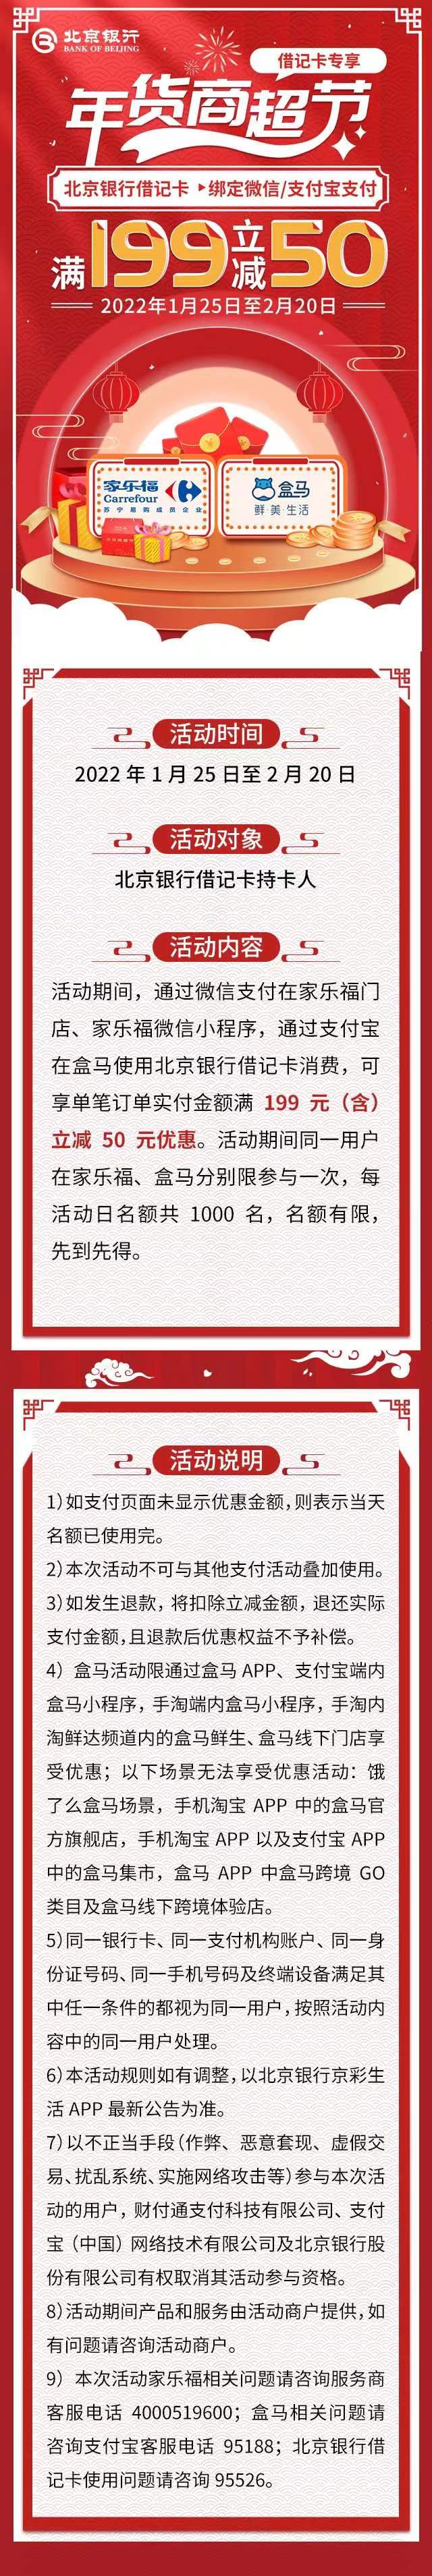 北京银行借记卡家乐福、盒马满199-50元